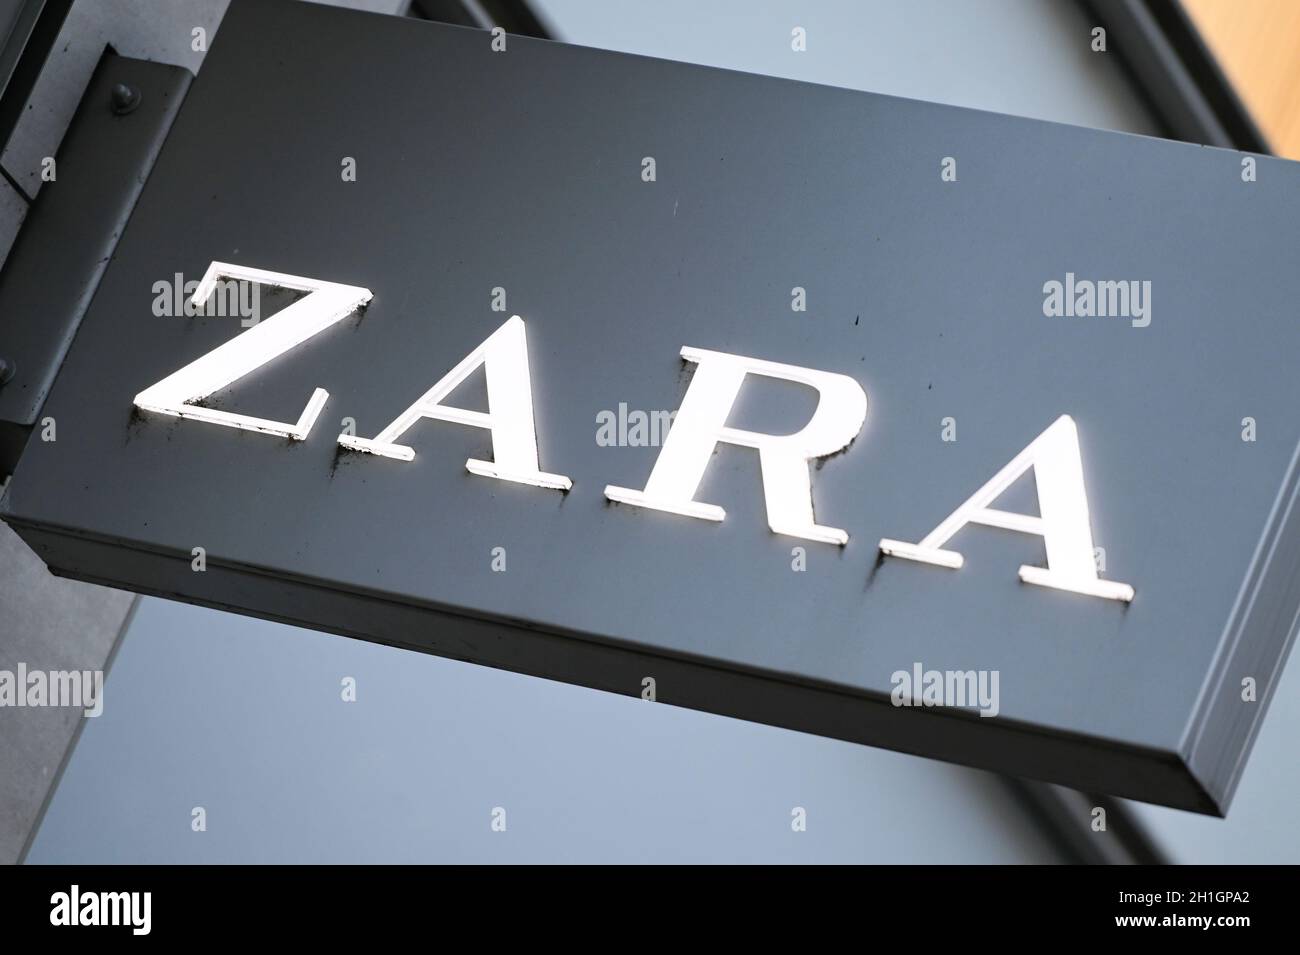 Symbolfoto; Symbolbild und Logo der Modekette ZARA in Deutschland. Das spanische Modelabel leidet unter der Krise in der Bekleidungsindustrie und Coro Stock Photo